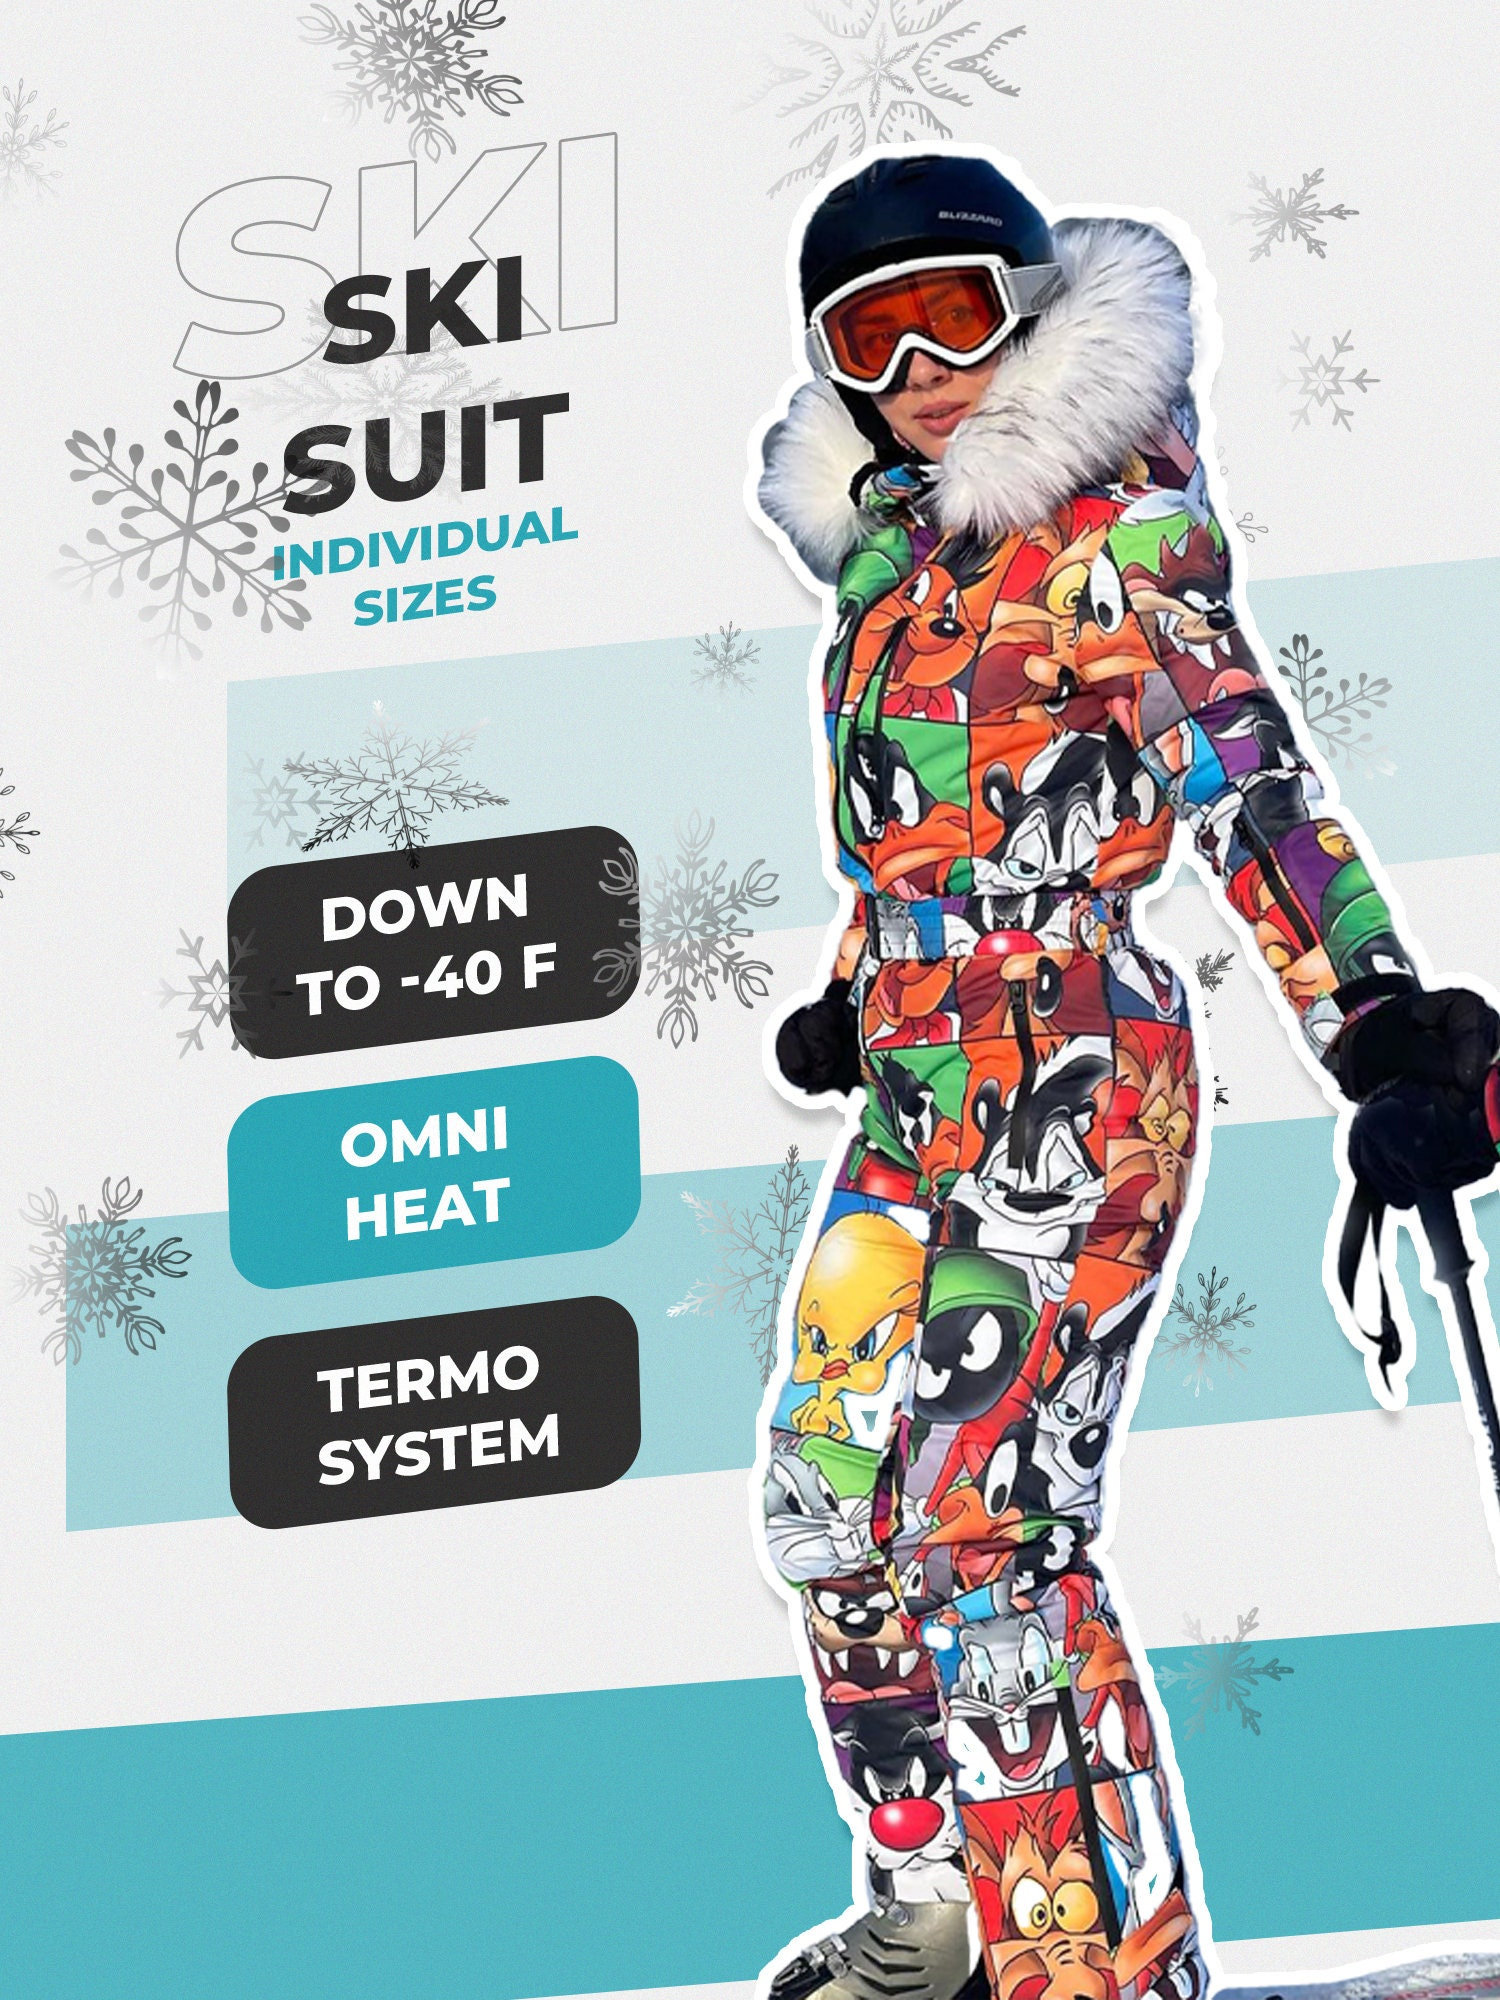 Sudadera con capucha de alta calidad para mujer, chaqueta deportiva de  Snowboard para correr y hacer